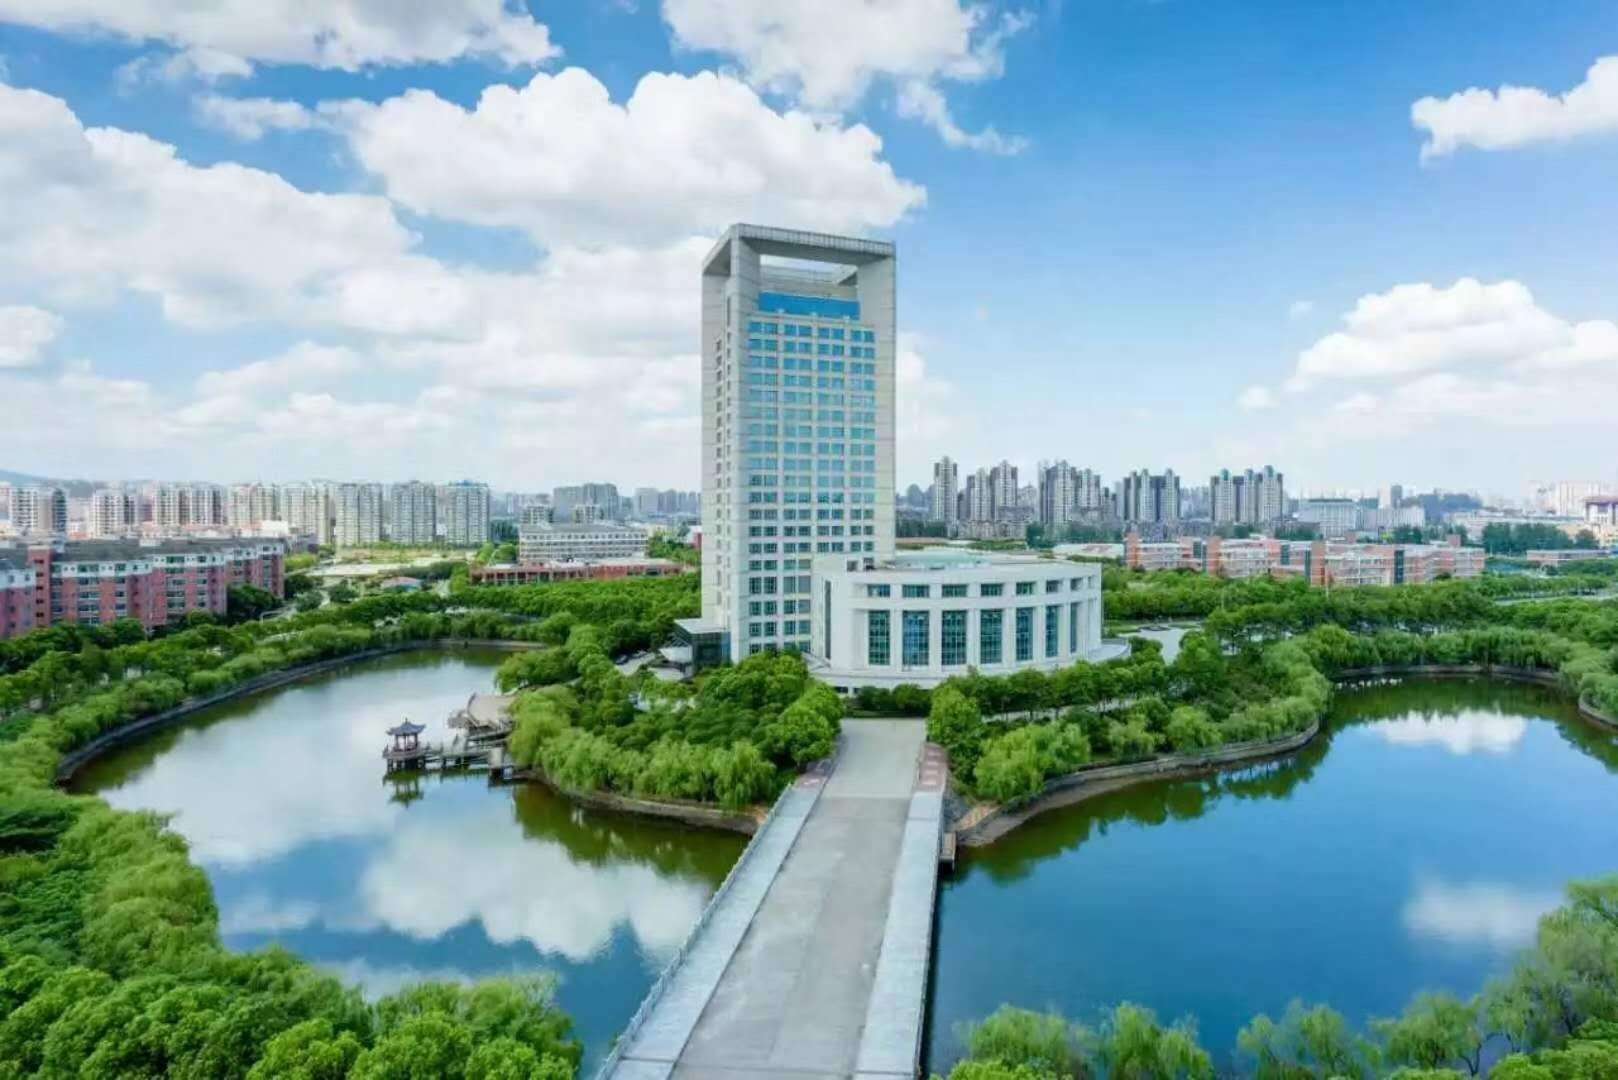 南昌航空大学 全景图片